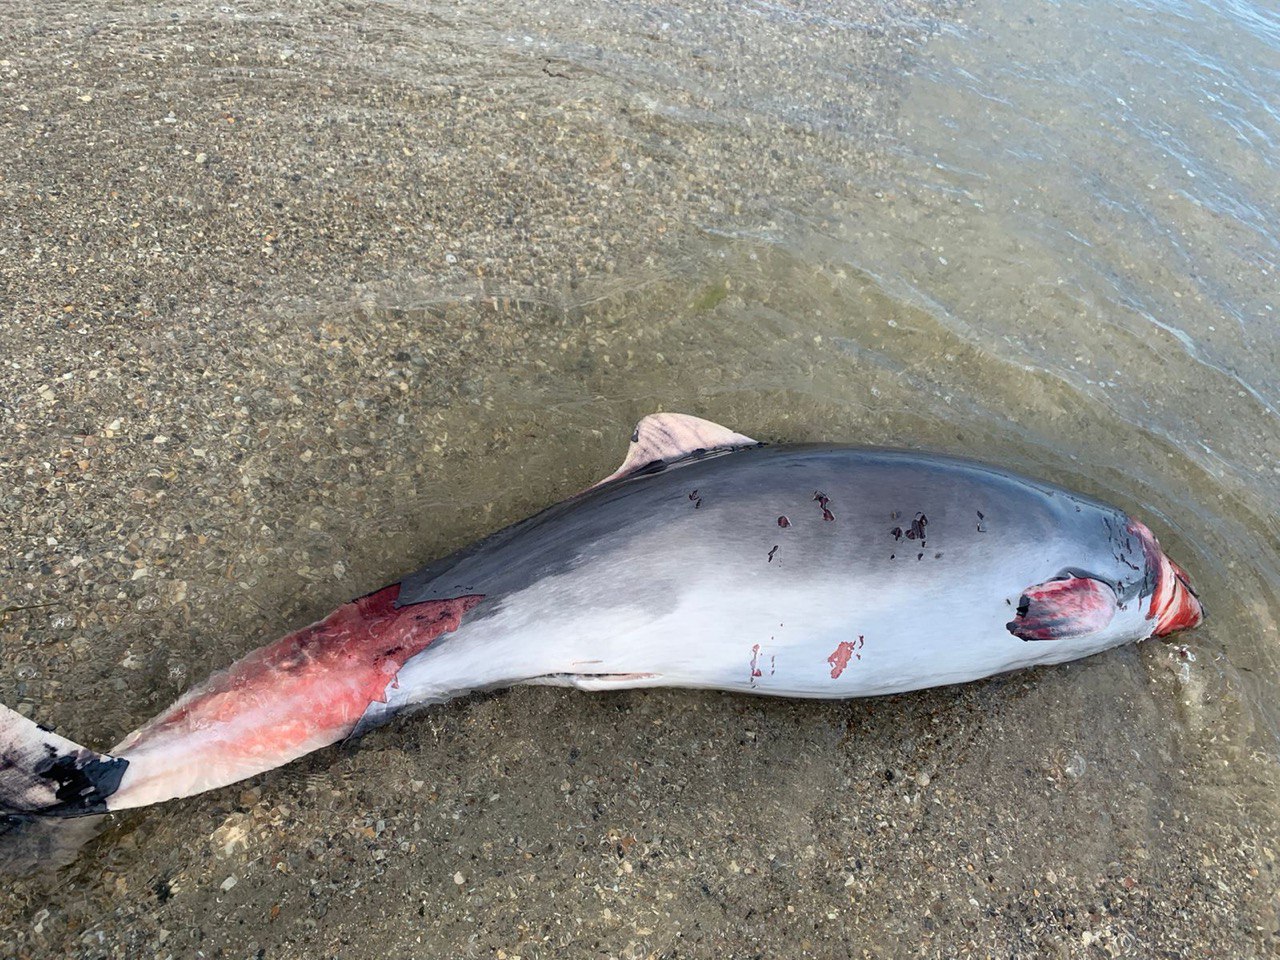 В Приморском на берег выбросило троих мертвых дельфинов. Кто убивает животных: оккупанты или браконьеры?